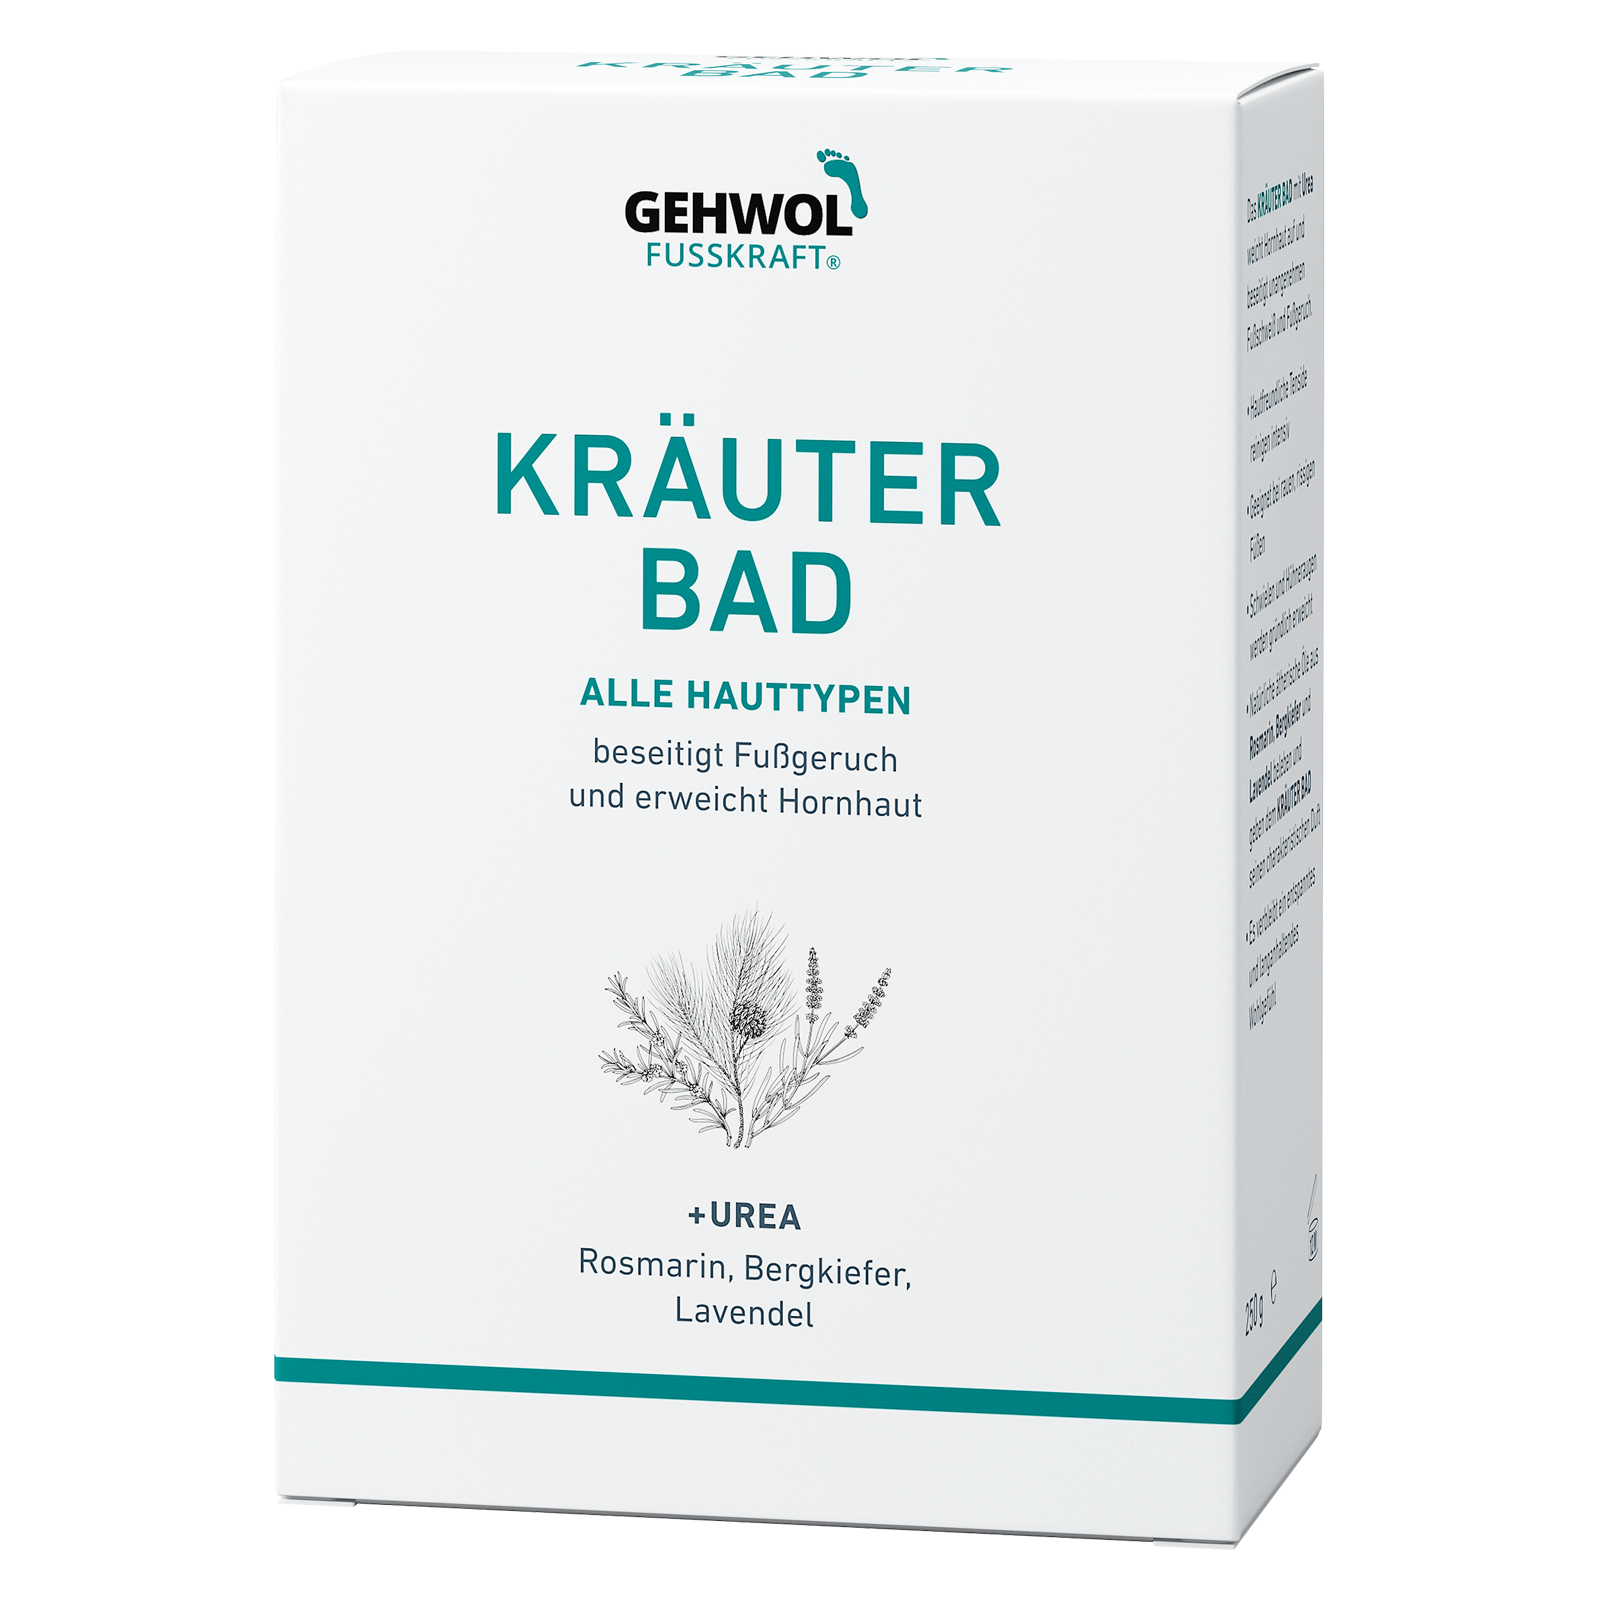 GEHWOL FUSSKRAFT® Kräuter Bad (Farbe Grün), 250 g